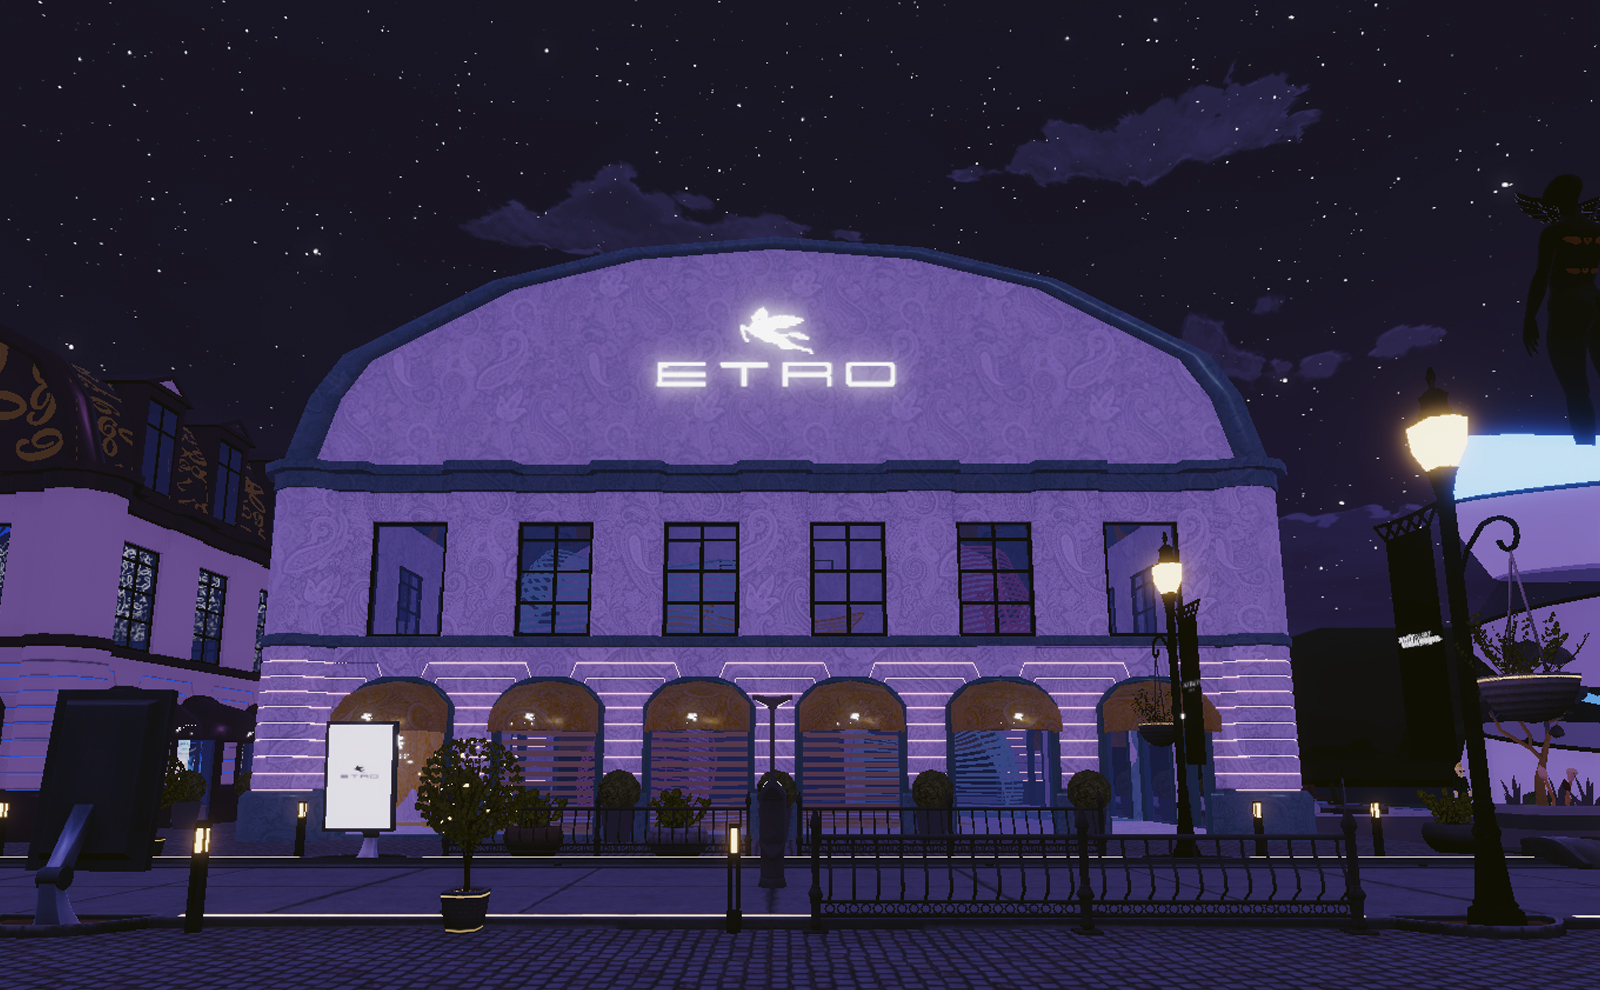 Geceleri Metaverse Moda Haftası'nda Etro binası